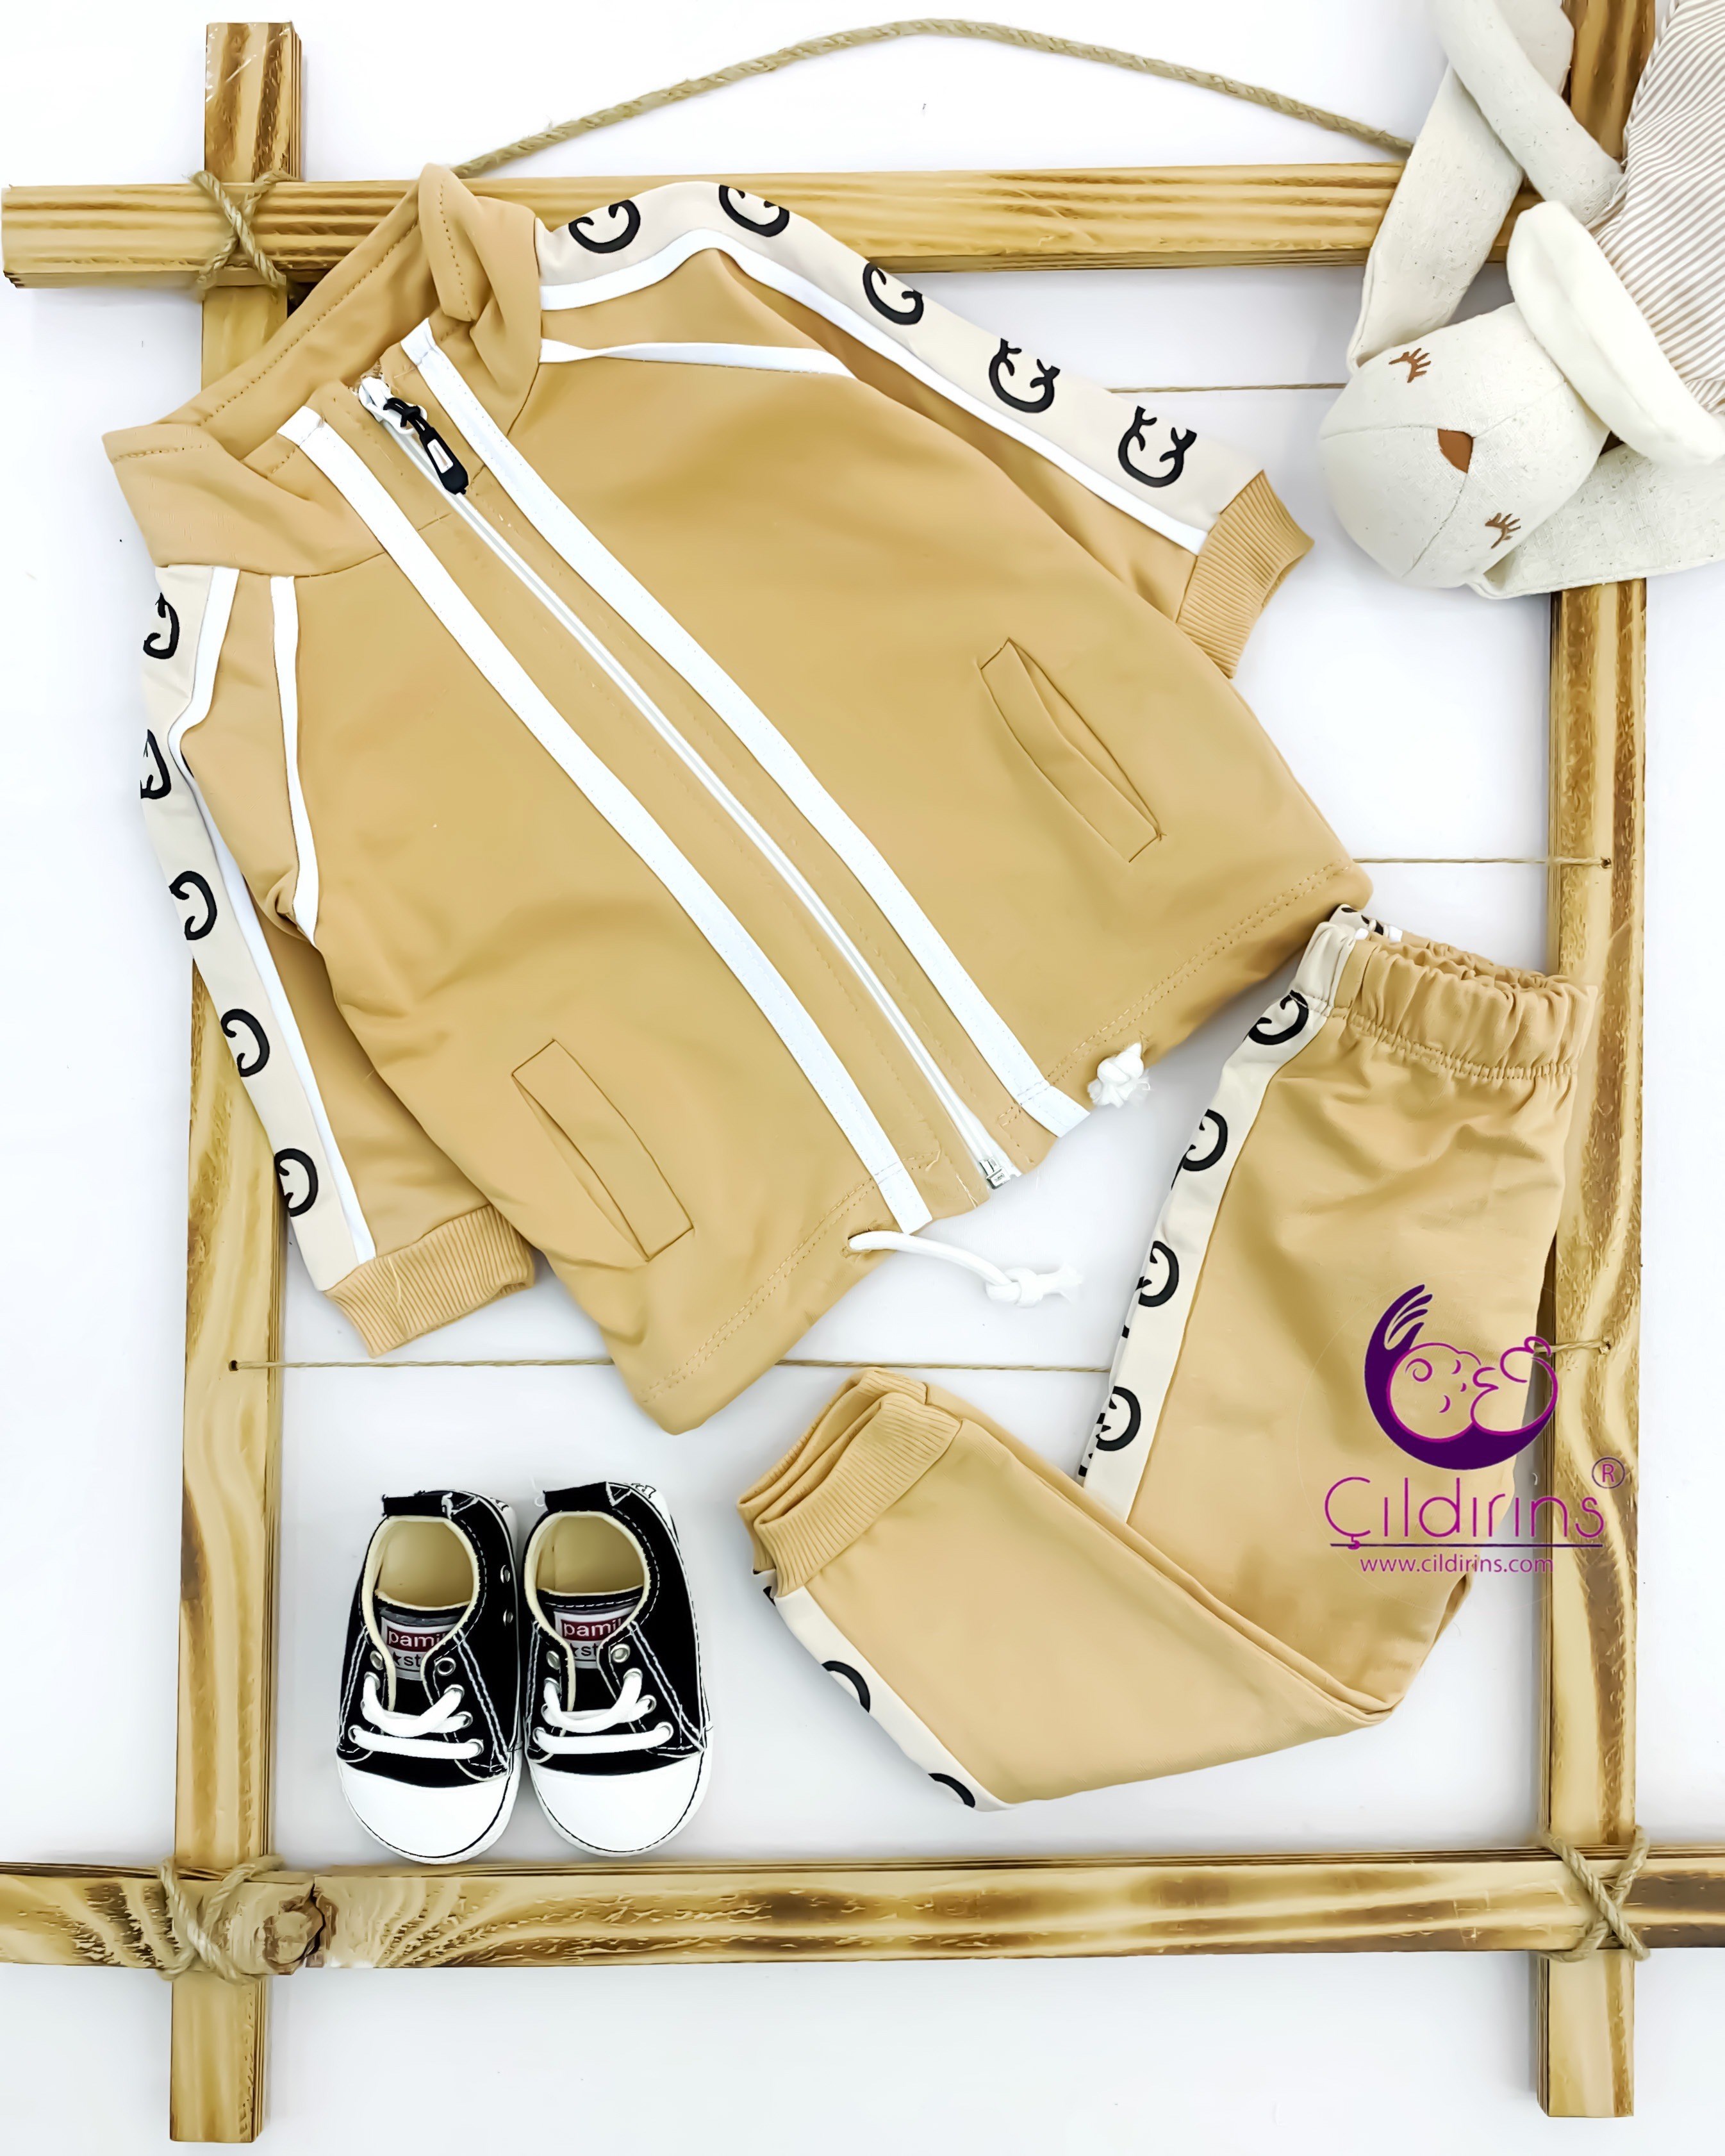 Miniapple Çift Şeritli Kolları ve Pantolonu Gucci Desenli 2’li Çocuk Takımı - KREM